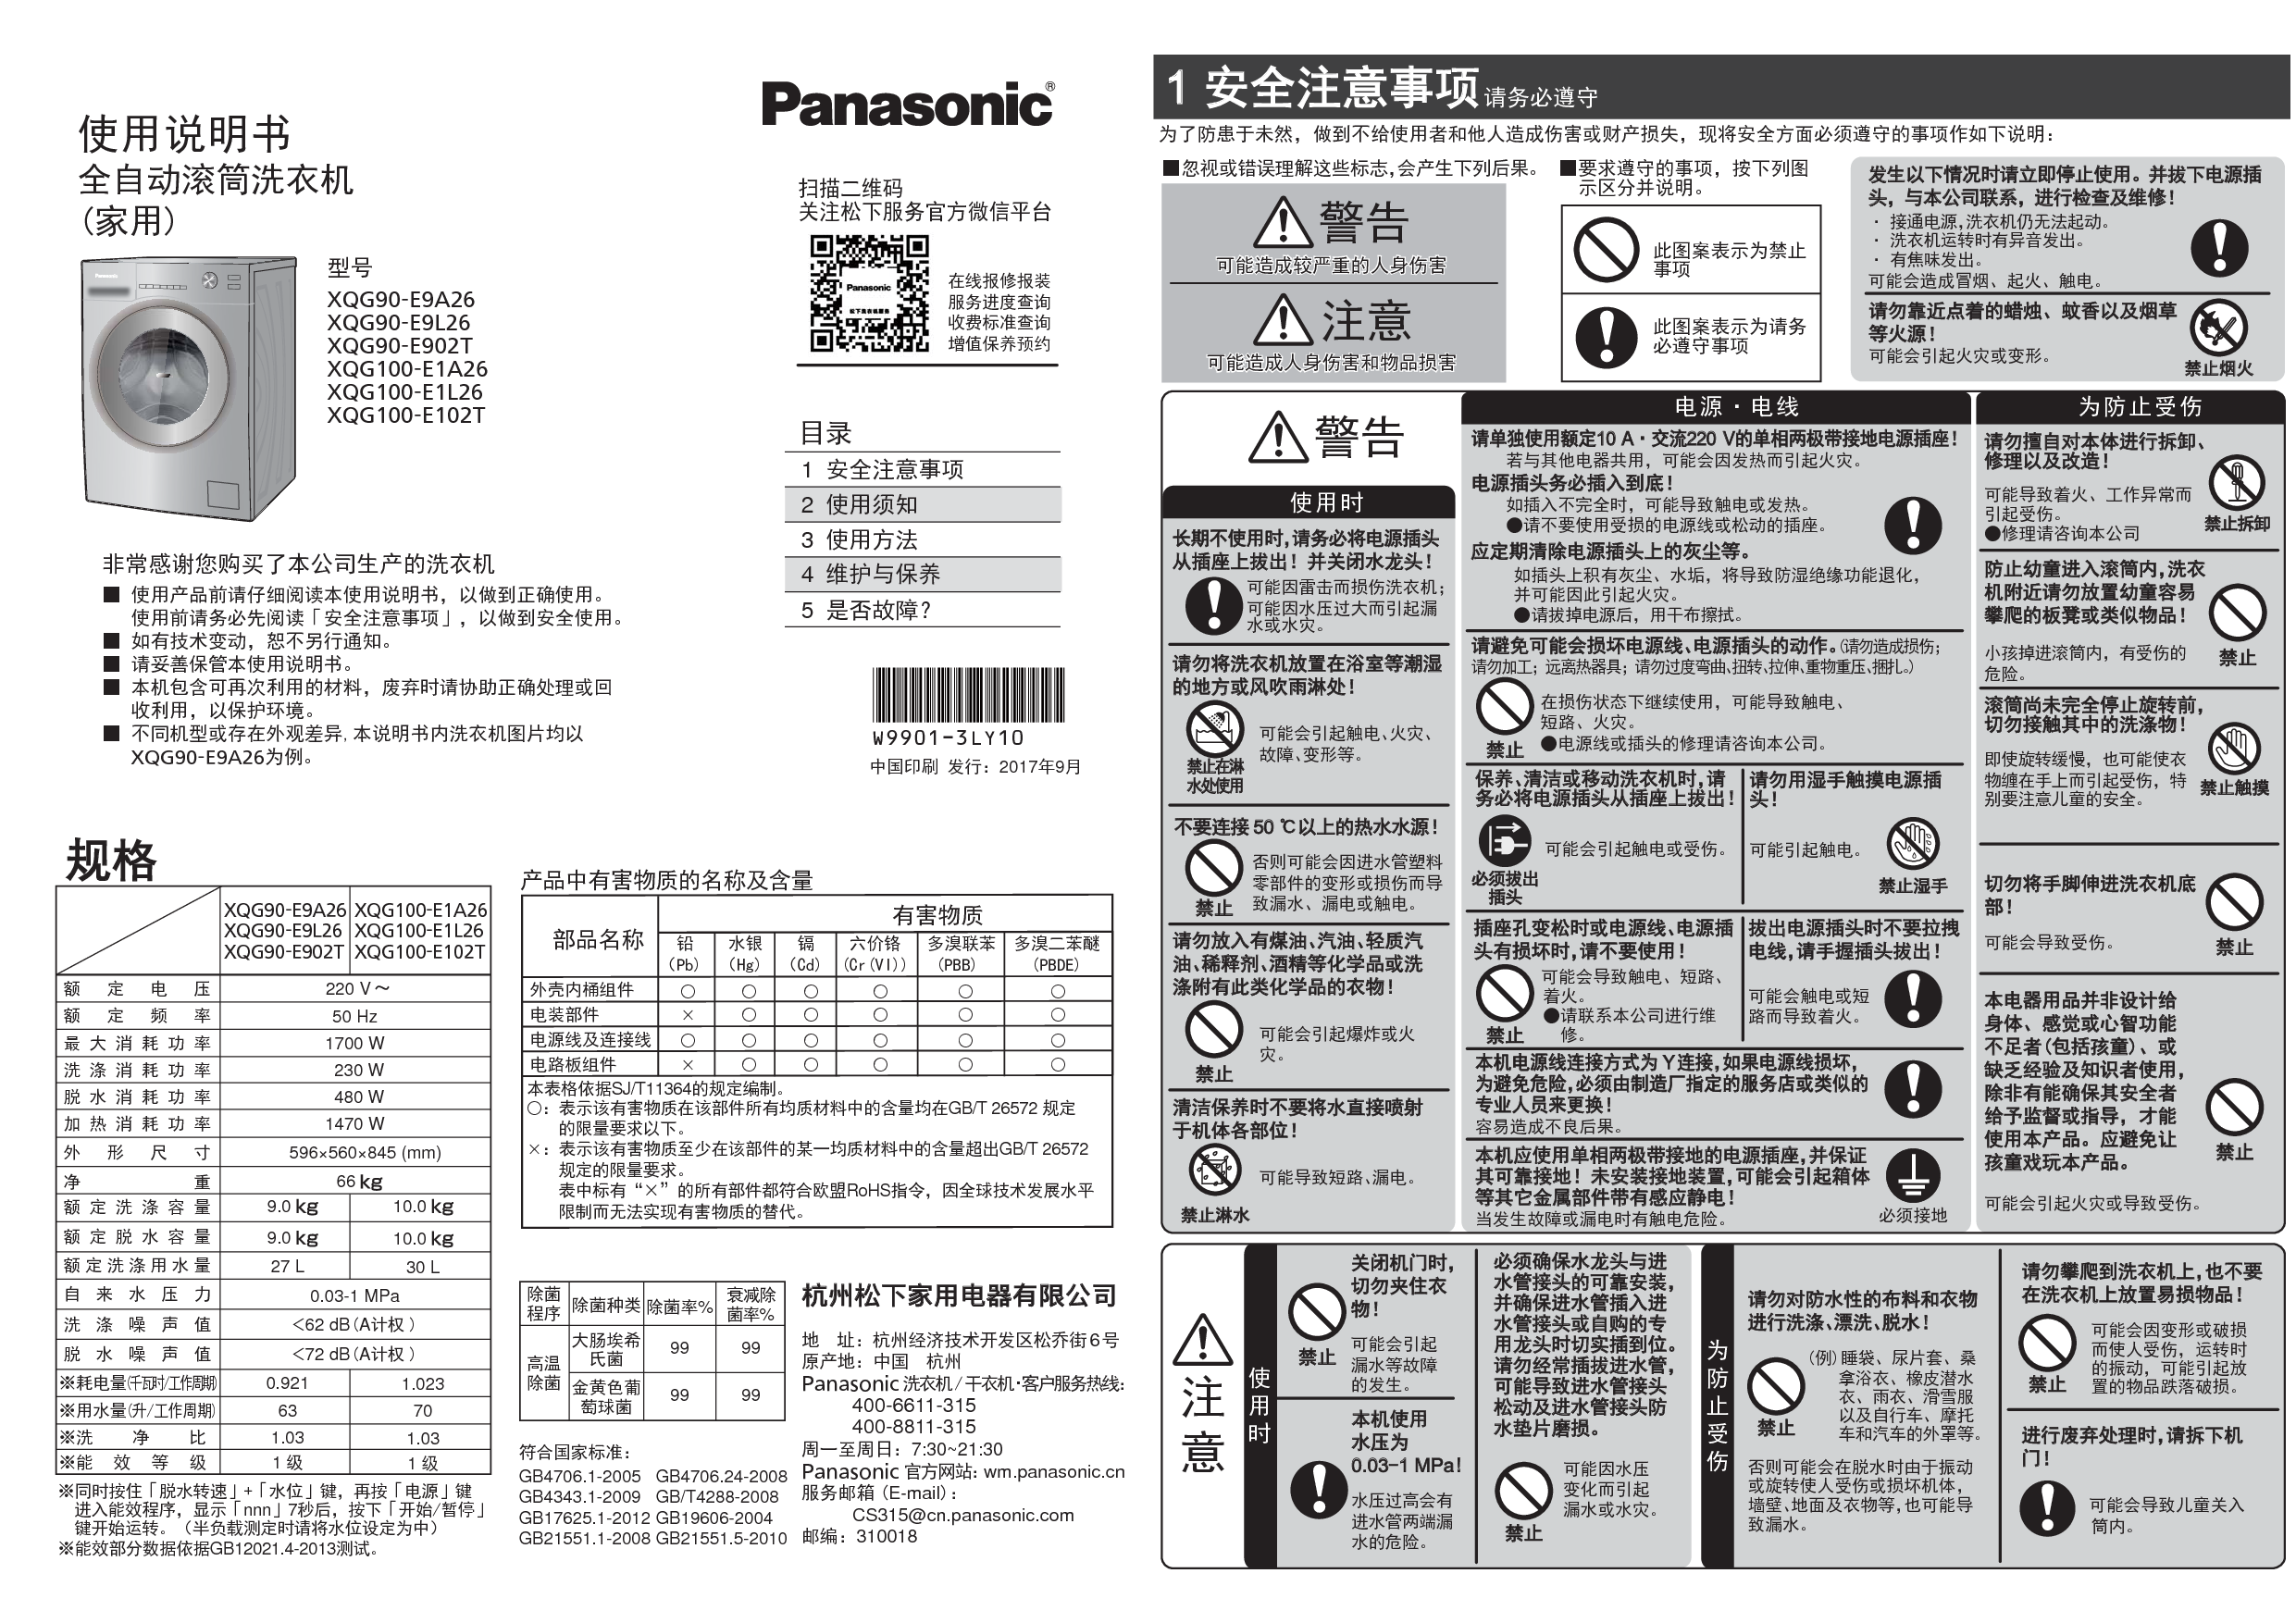 松下 Panasonic XQG100-E1L26, XQG90-E9A2P 使用说明书 封面